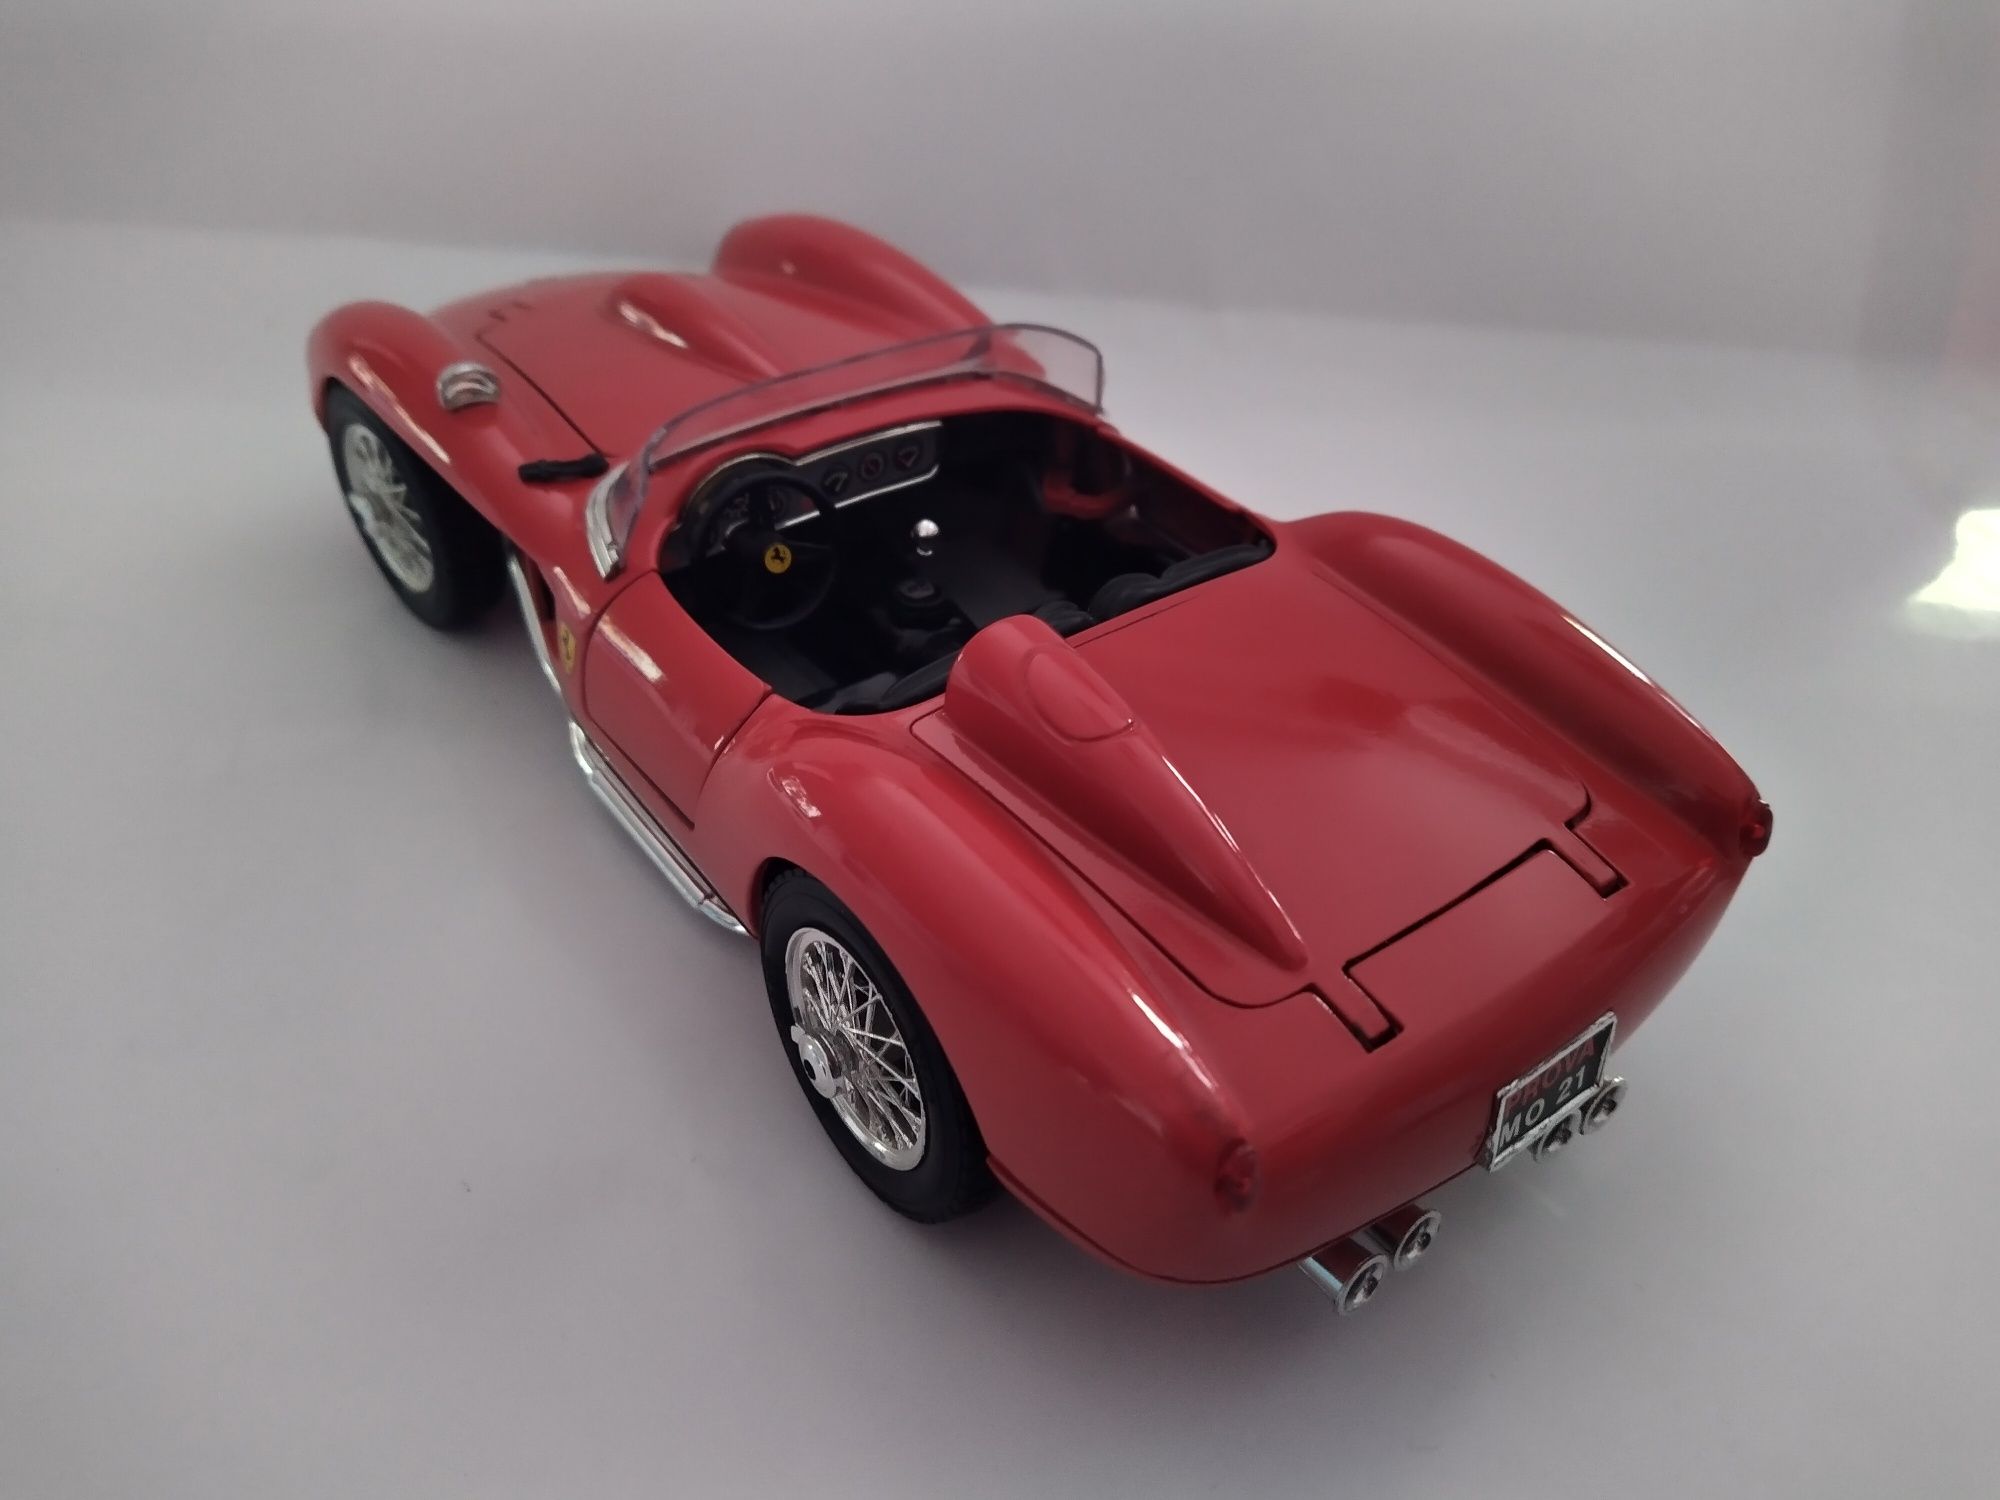 Ferrari 250 Tessa Rossa bburago burago Skala 1:18